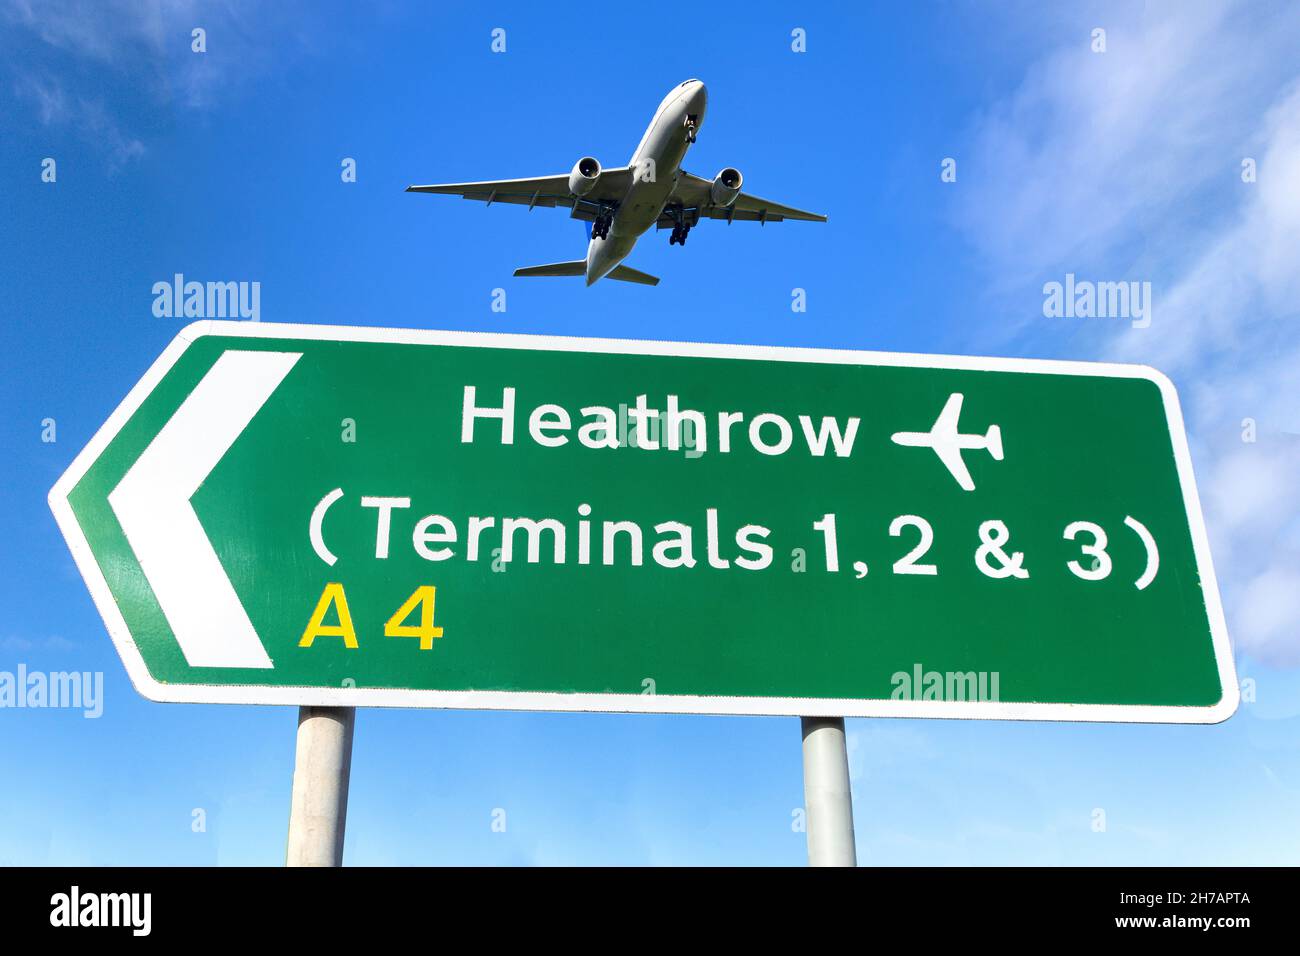 Flugzeuge, die über das Straßenschild des Heathrow Airport Terminals fliegen, Cranford, London Borough of Hounslow, Greater London, England, Vereinigtes Königreich Stockfoto